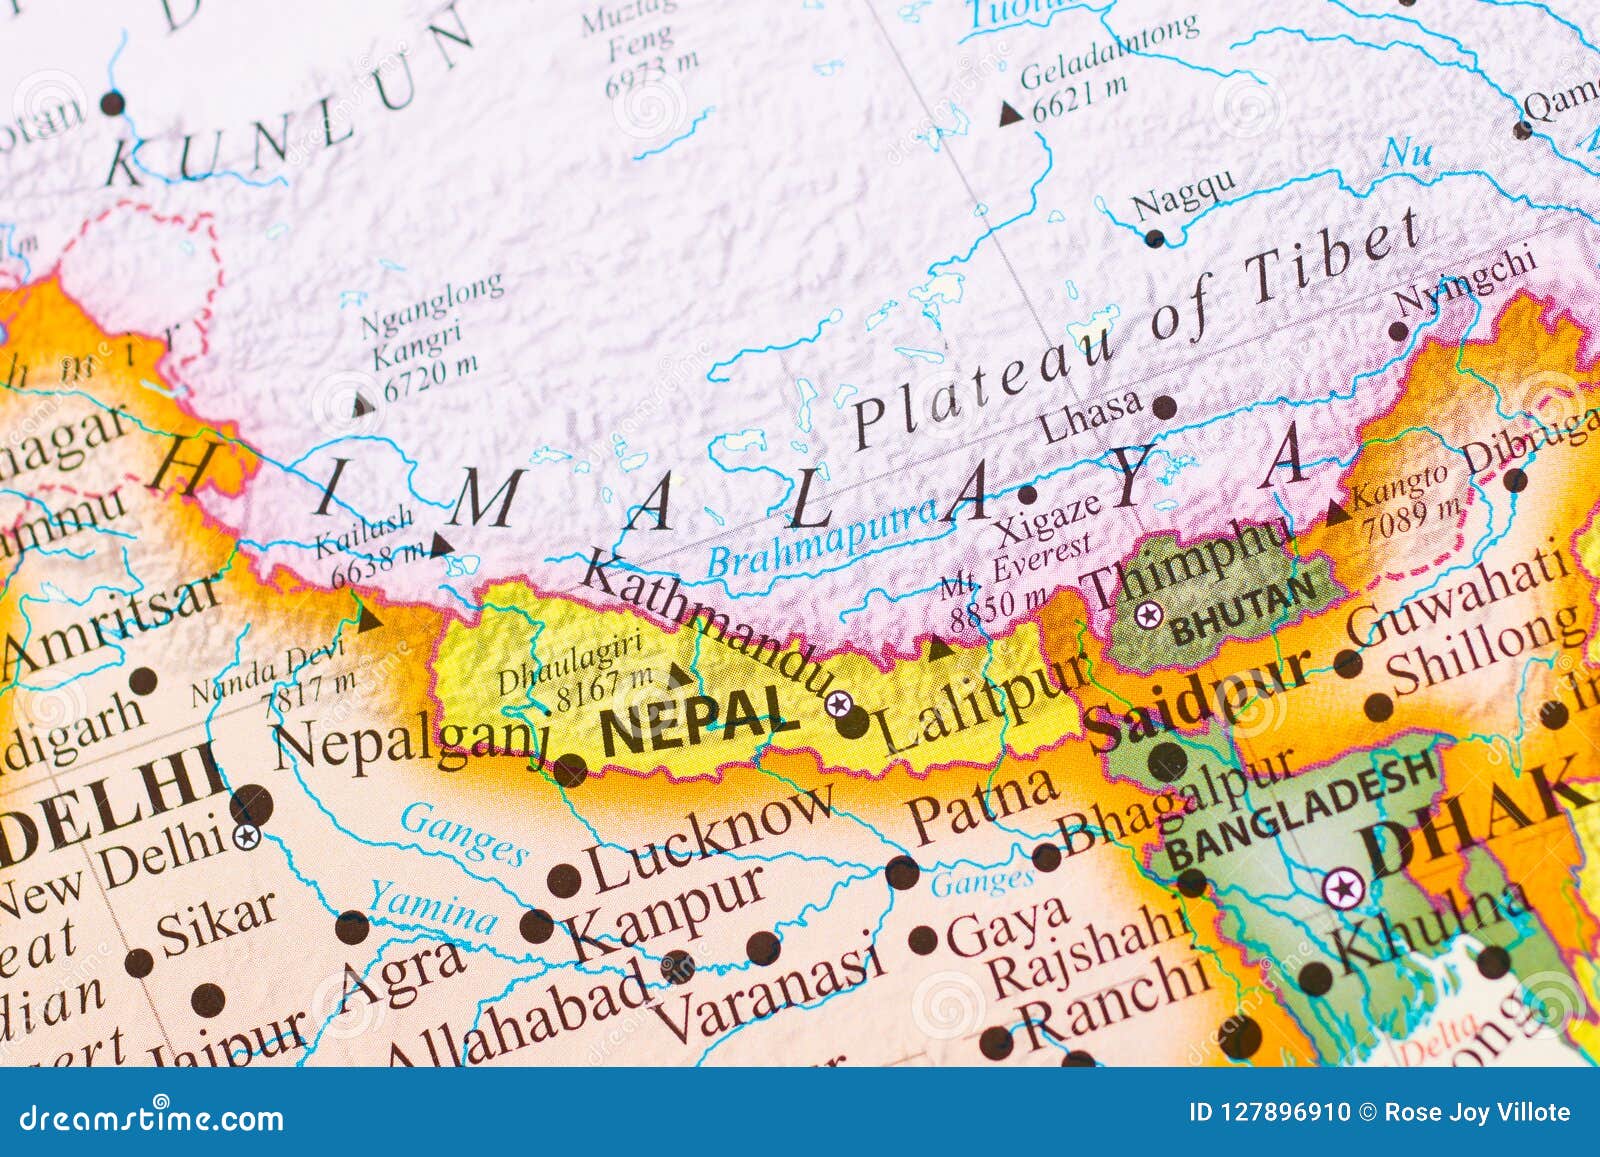 Показать на карте гималаи. Гималаи на карте. Тибет и Гималаи на карте. Гималайские горы на карте. Гималаи карта географическая.